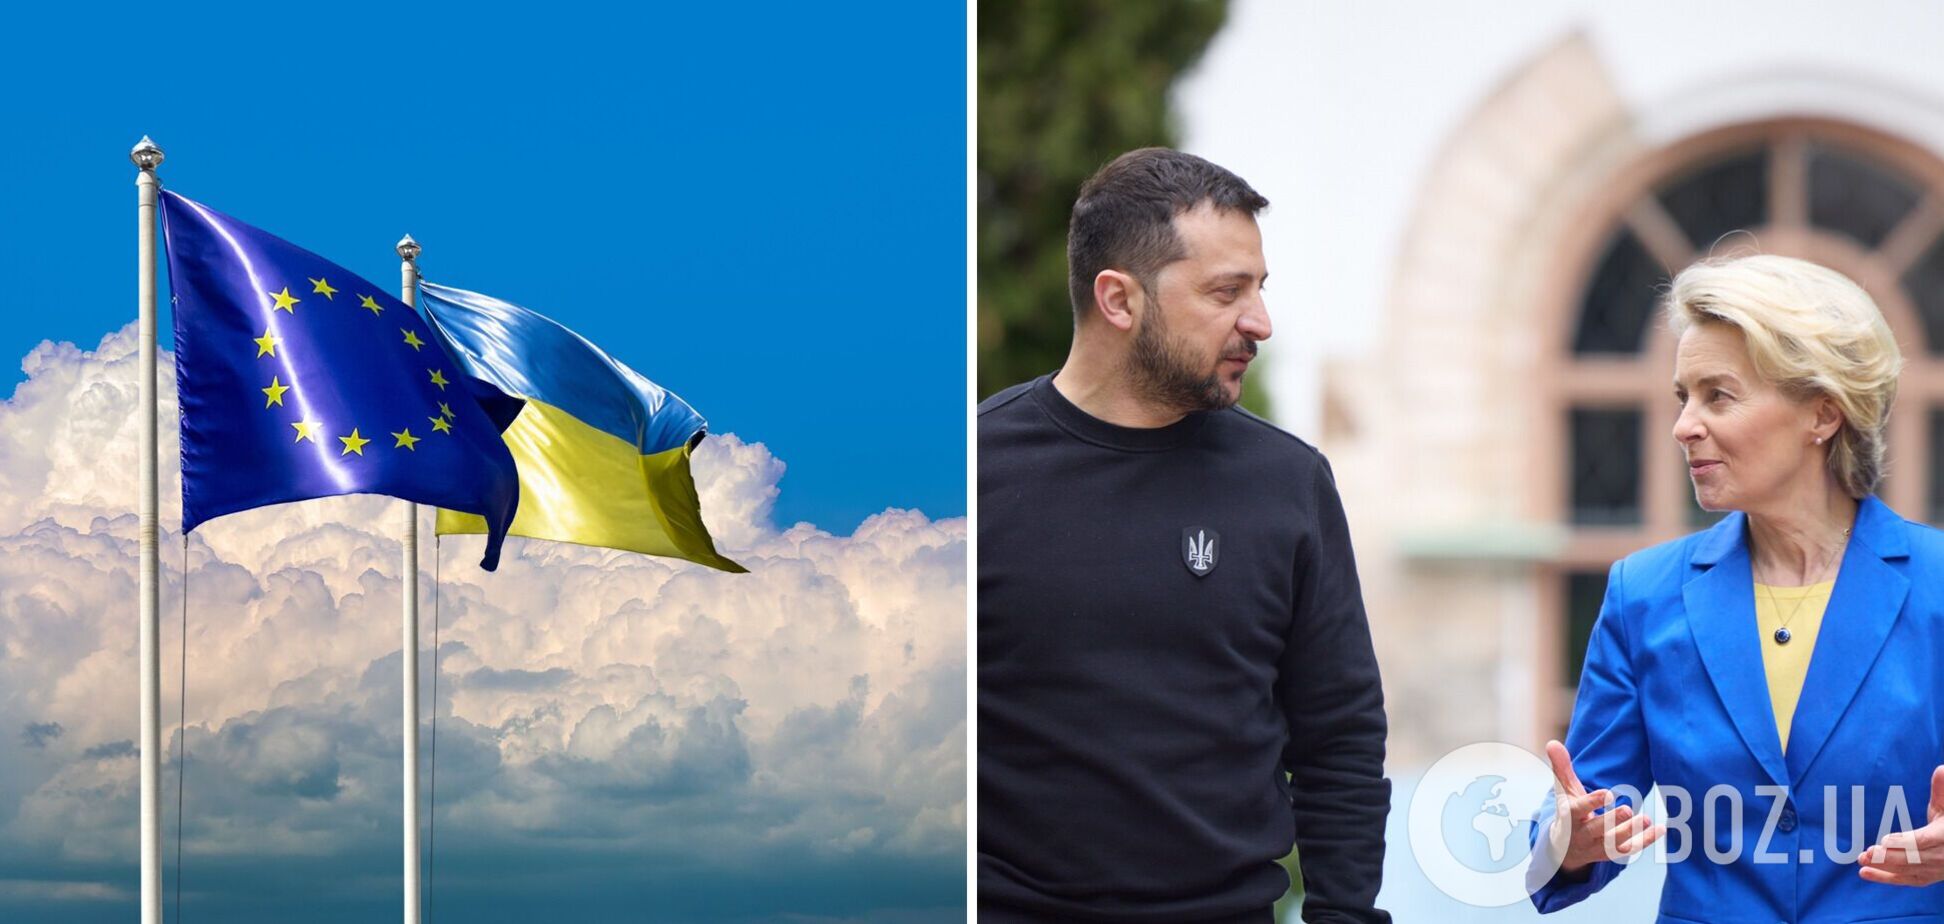 'Украина выполнит все рекомендации': Зеленский и фон дер Ляйен скоординировали позиции перед декабрьским заседанием Евросовета